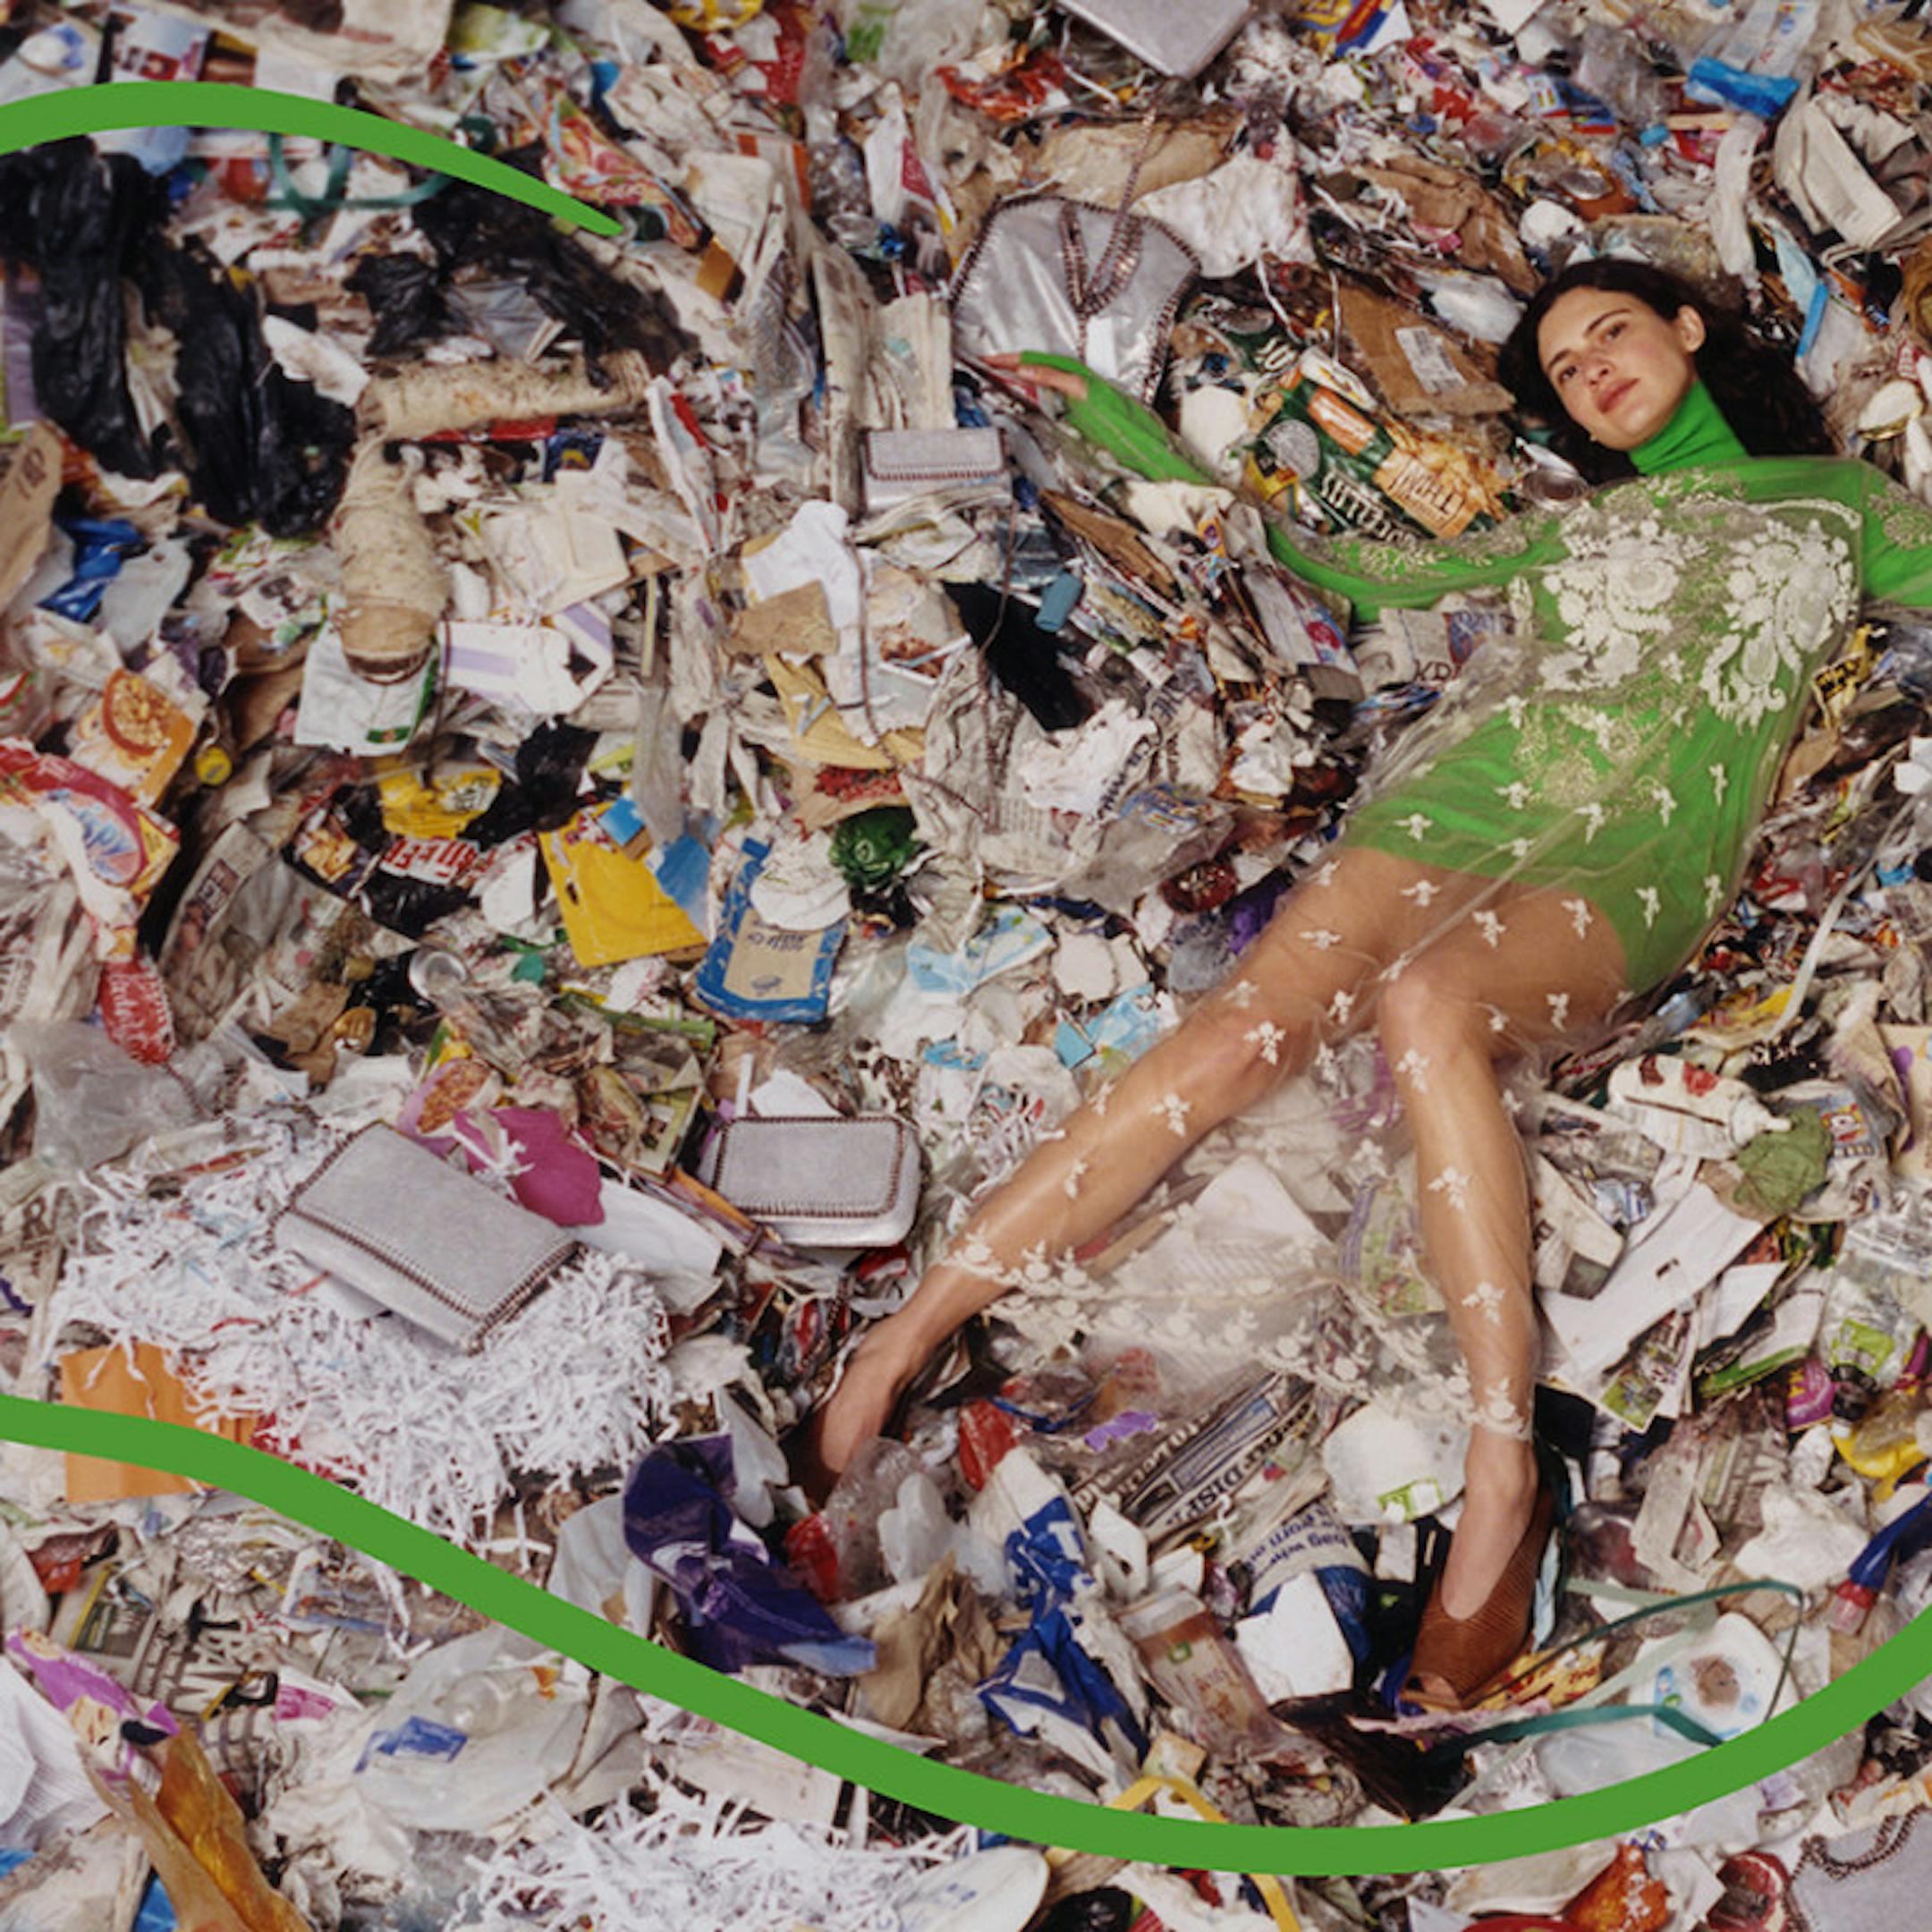 Campagne Stella McCartney 2017 pour dénoncer le gaspillage
